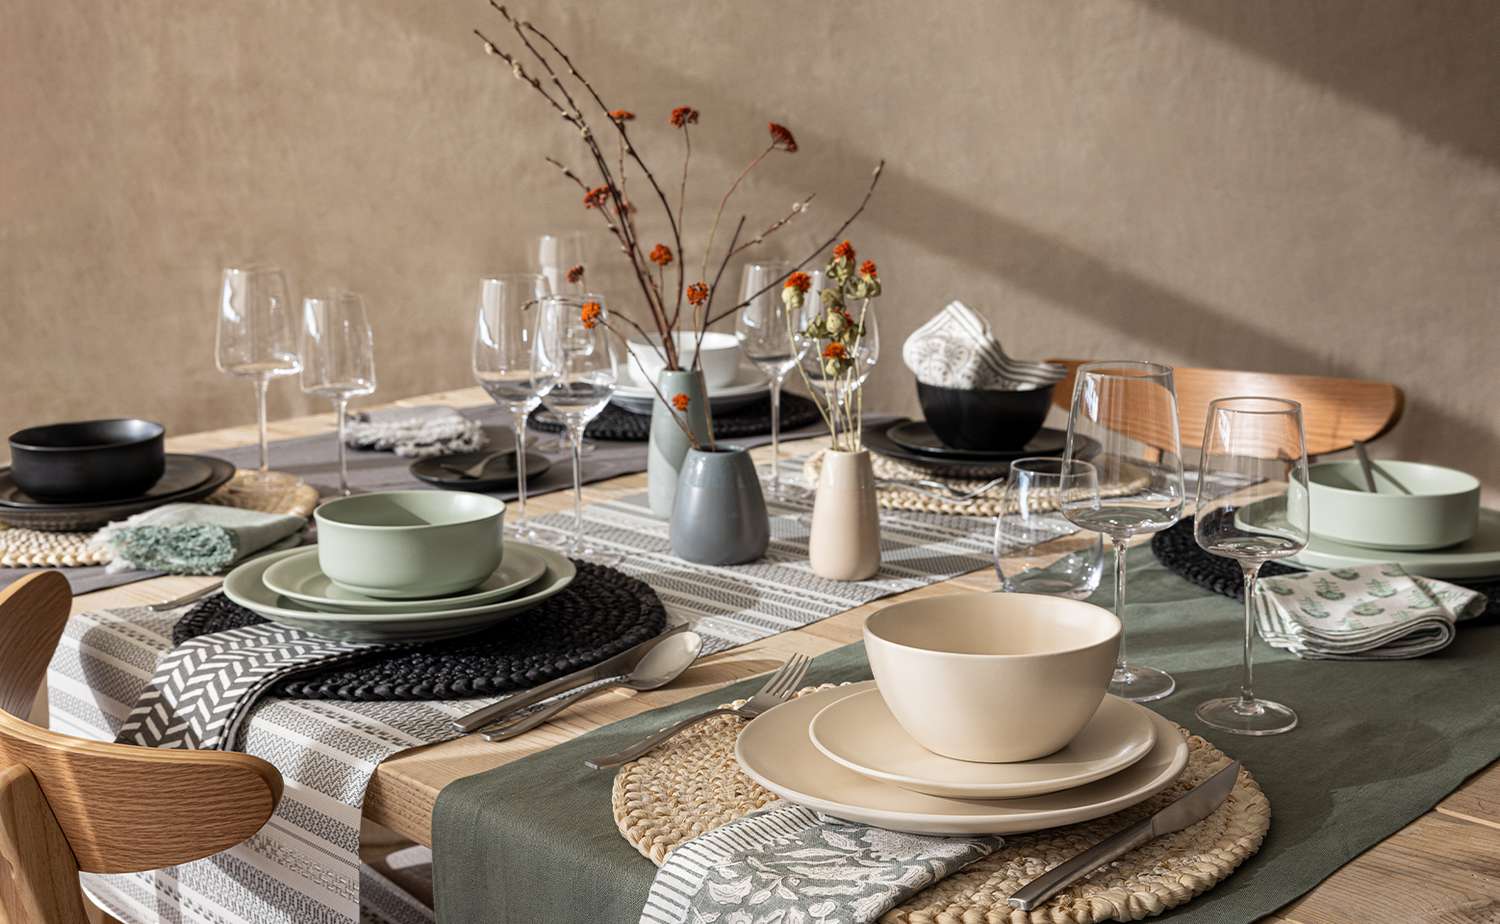 Un paysage de table composé d'assiettes beiges, noires et blanches sur différentes couches de sets de table et trois vases à fleurs en céramique de couleurs similaires trônent au centre de la table